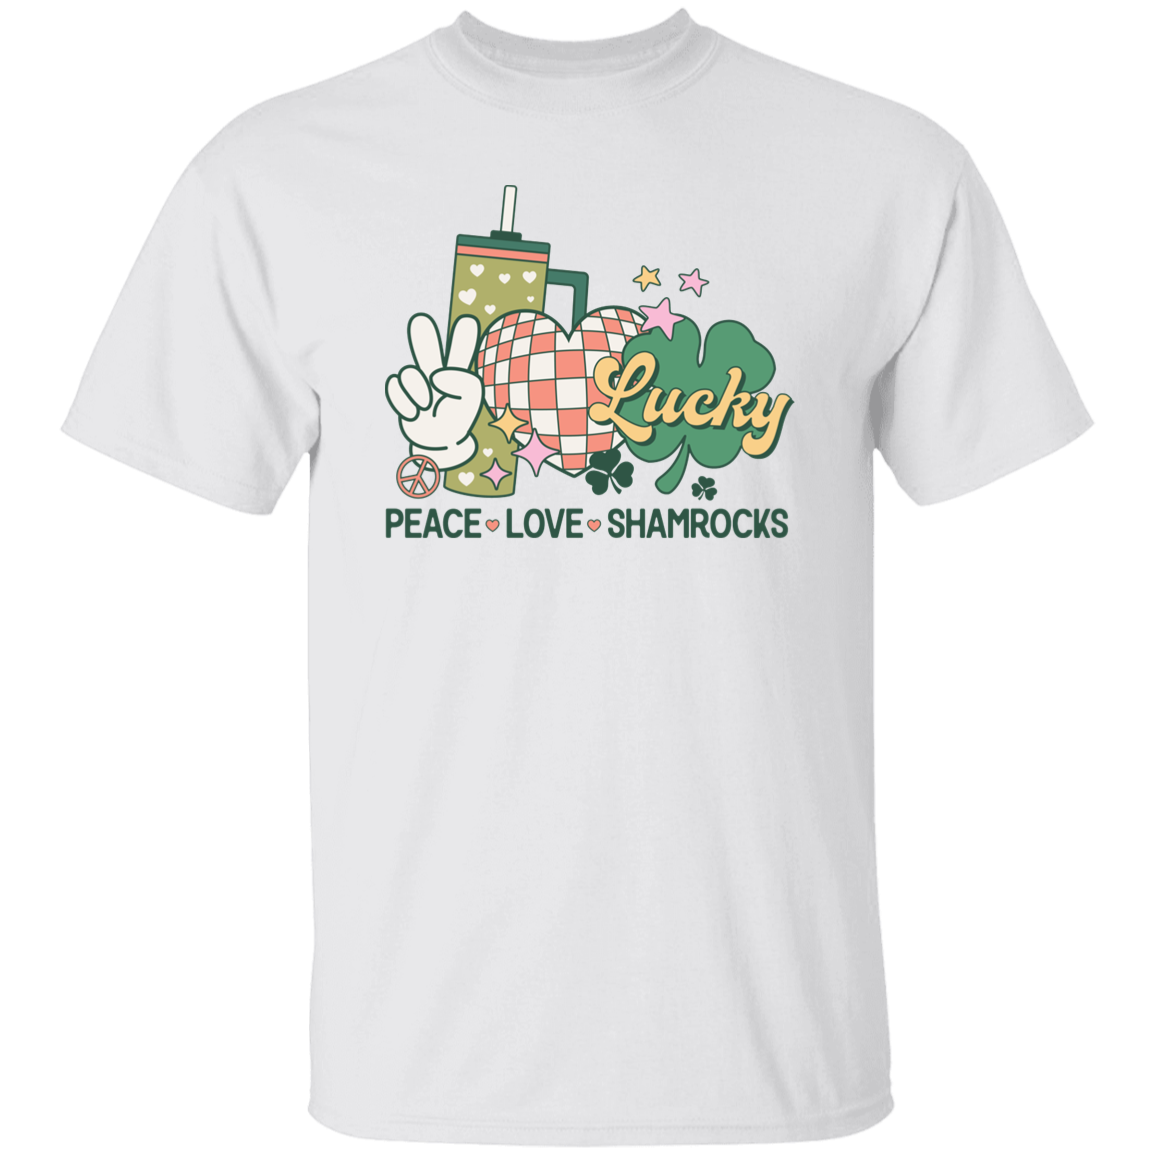 Paz, Amor y Trébol - Camiseta unisex